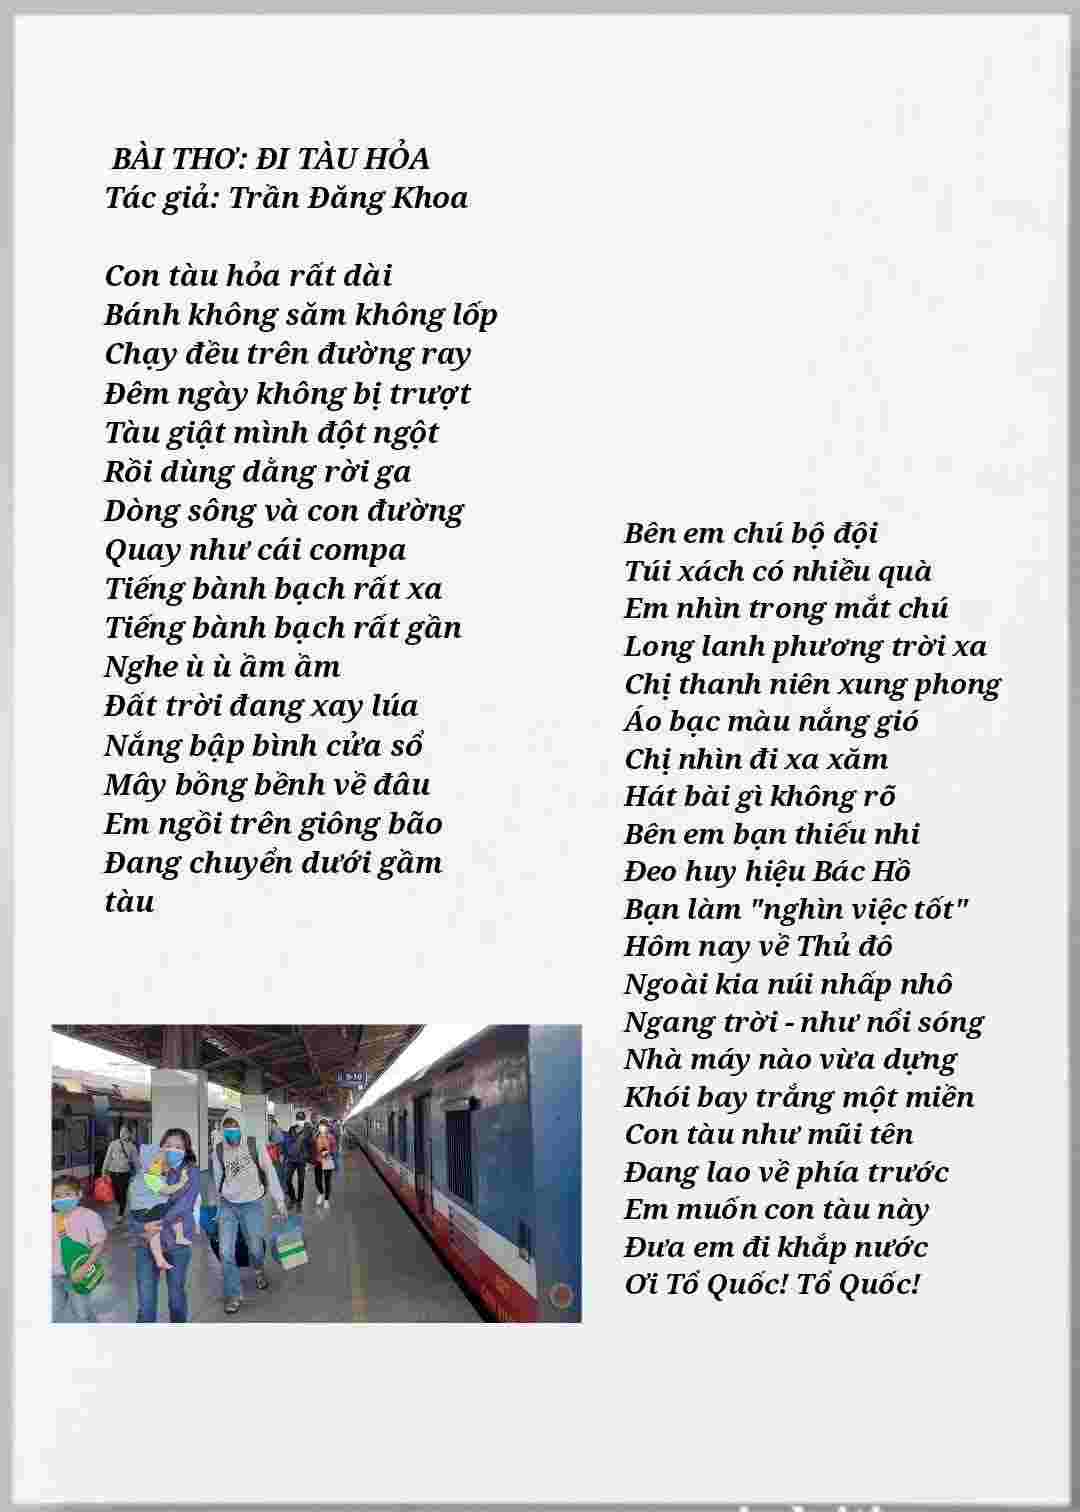 Tranh bài thơ đi tàu hỏa